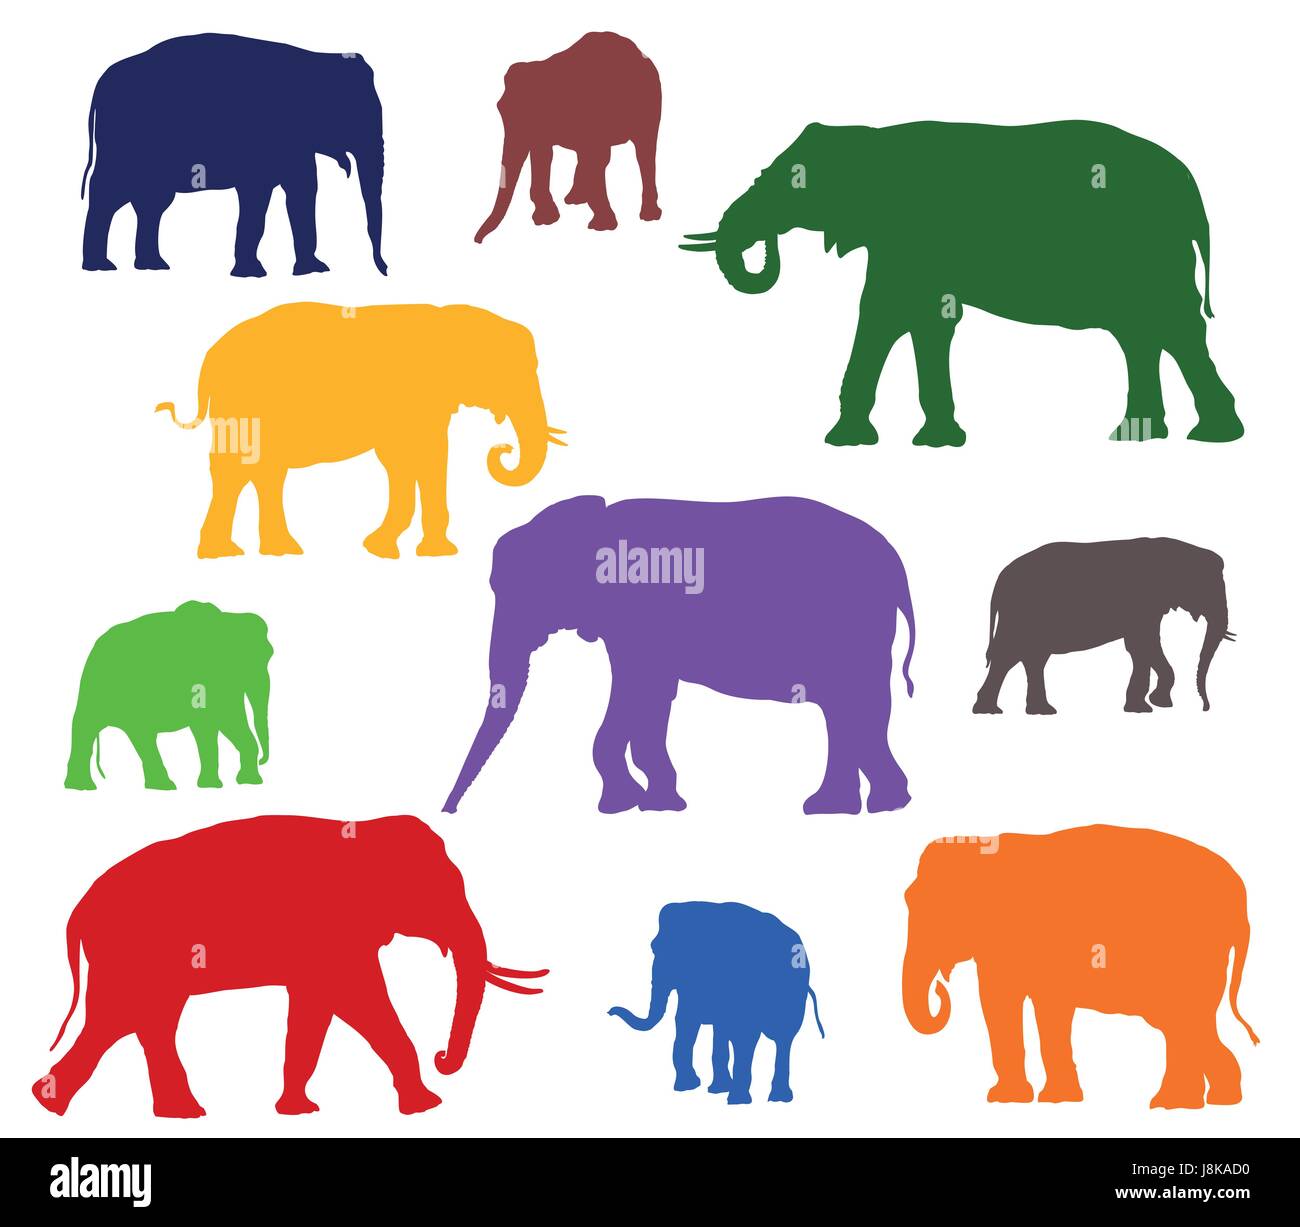 Satz von Vektor stehen indische und afrikanische Elefanten in verschiedenen Farben auf weißem Hintergrund Stock Vektor